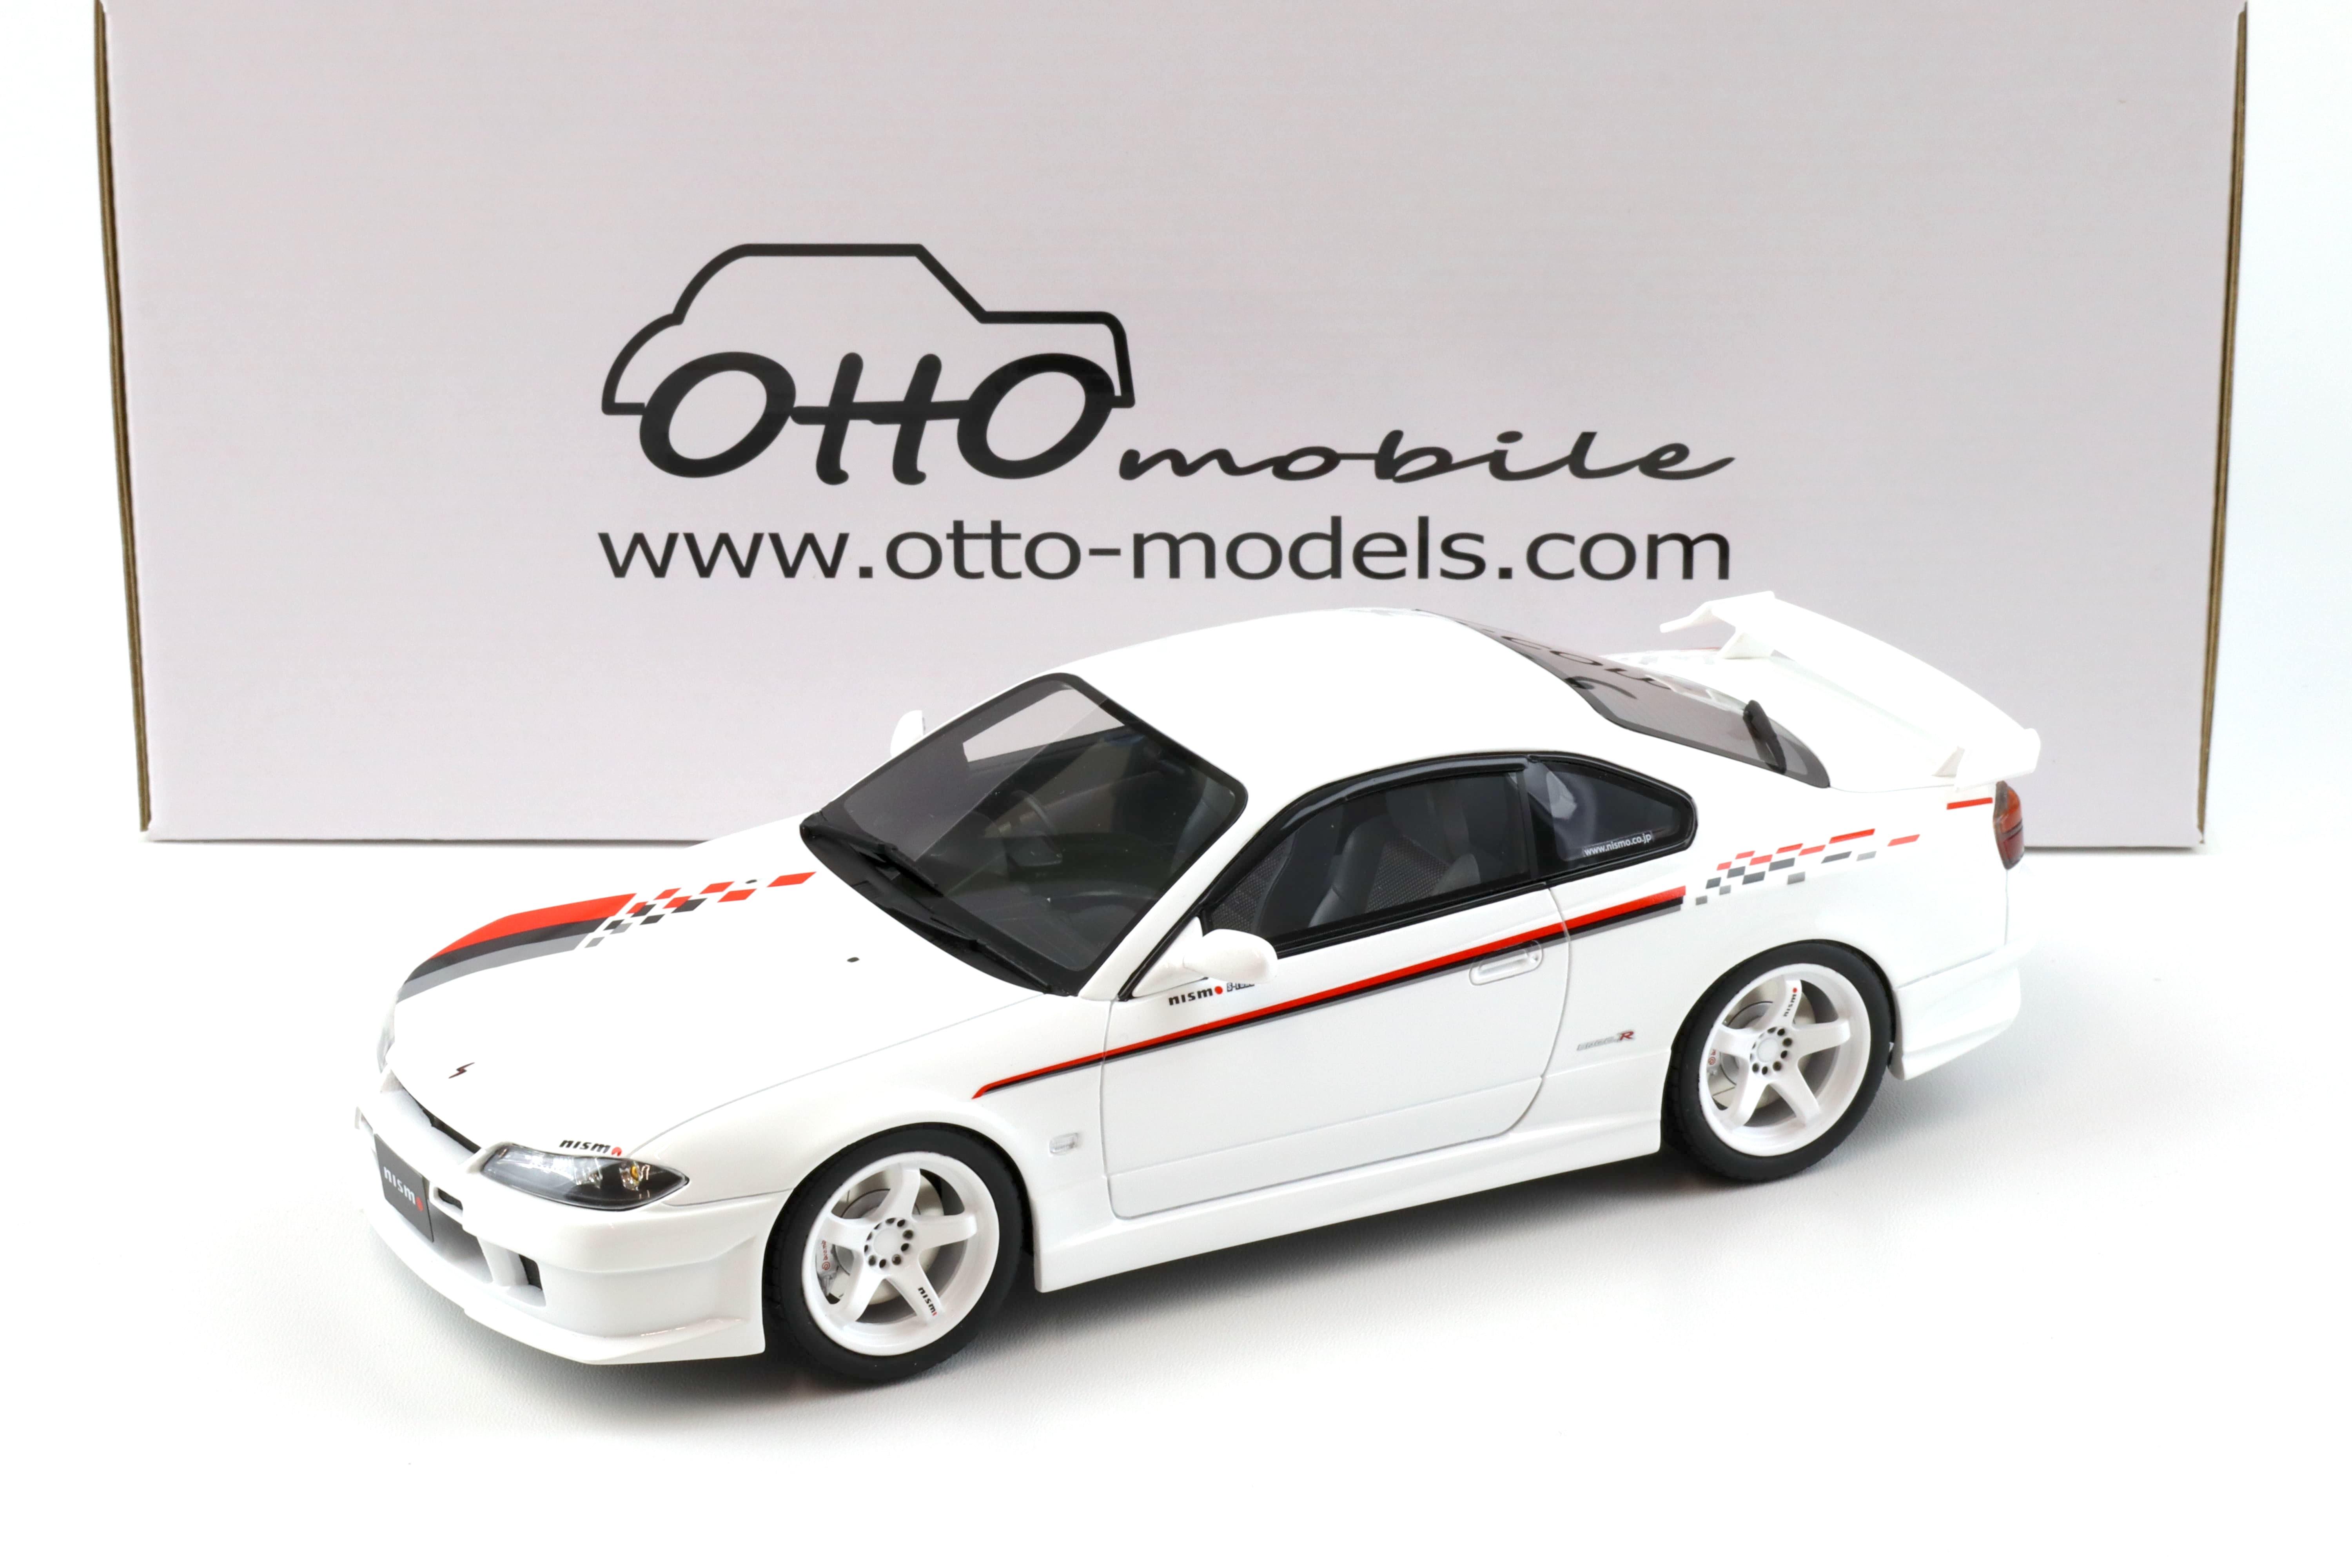 1:18 OTTO mobile OT1035 Nissan Silvia S15 Nismo S-Tune Coupe white 2000